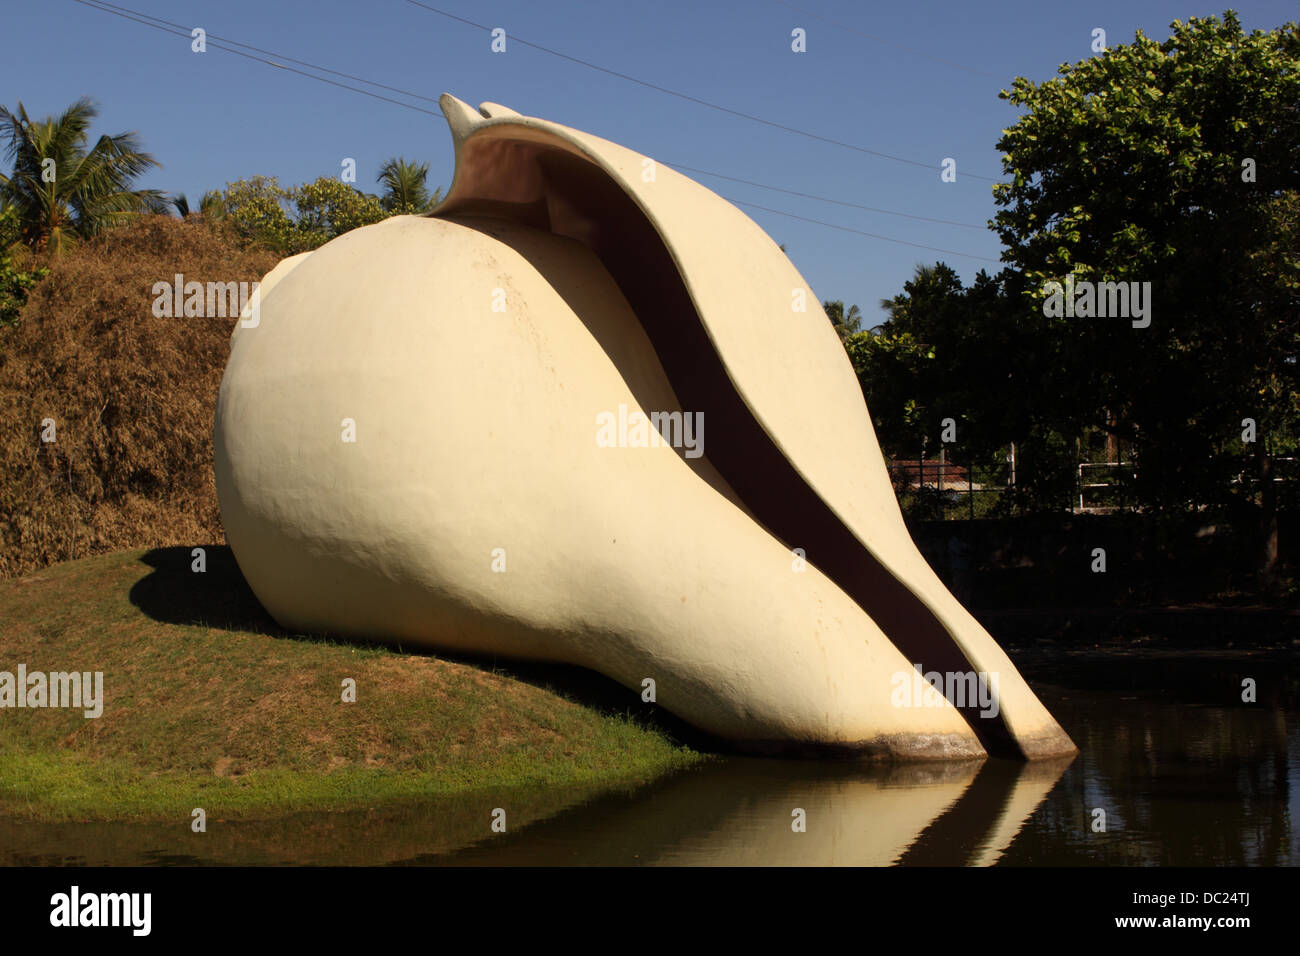 Big white conch sculpture Stock Photo